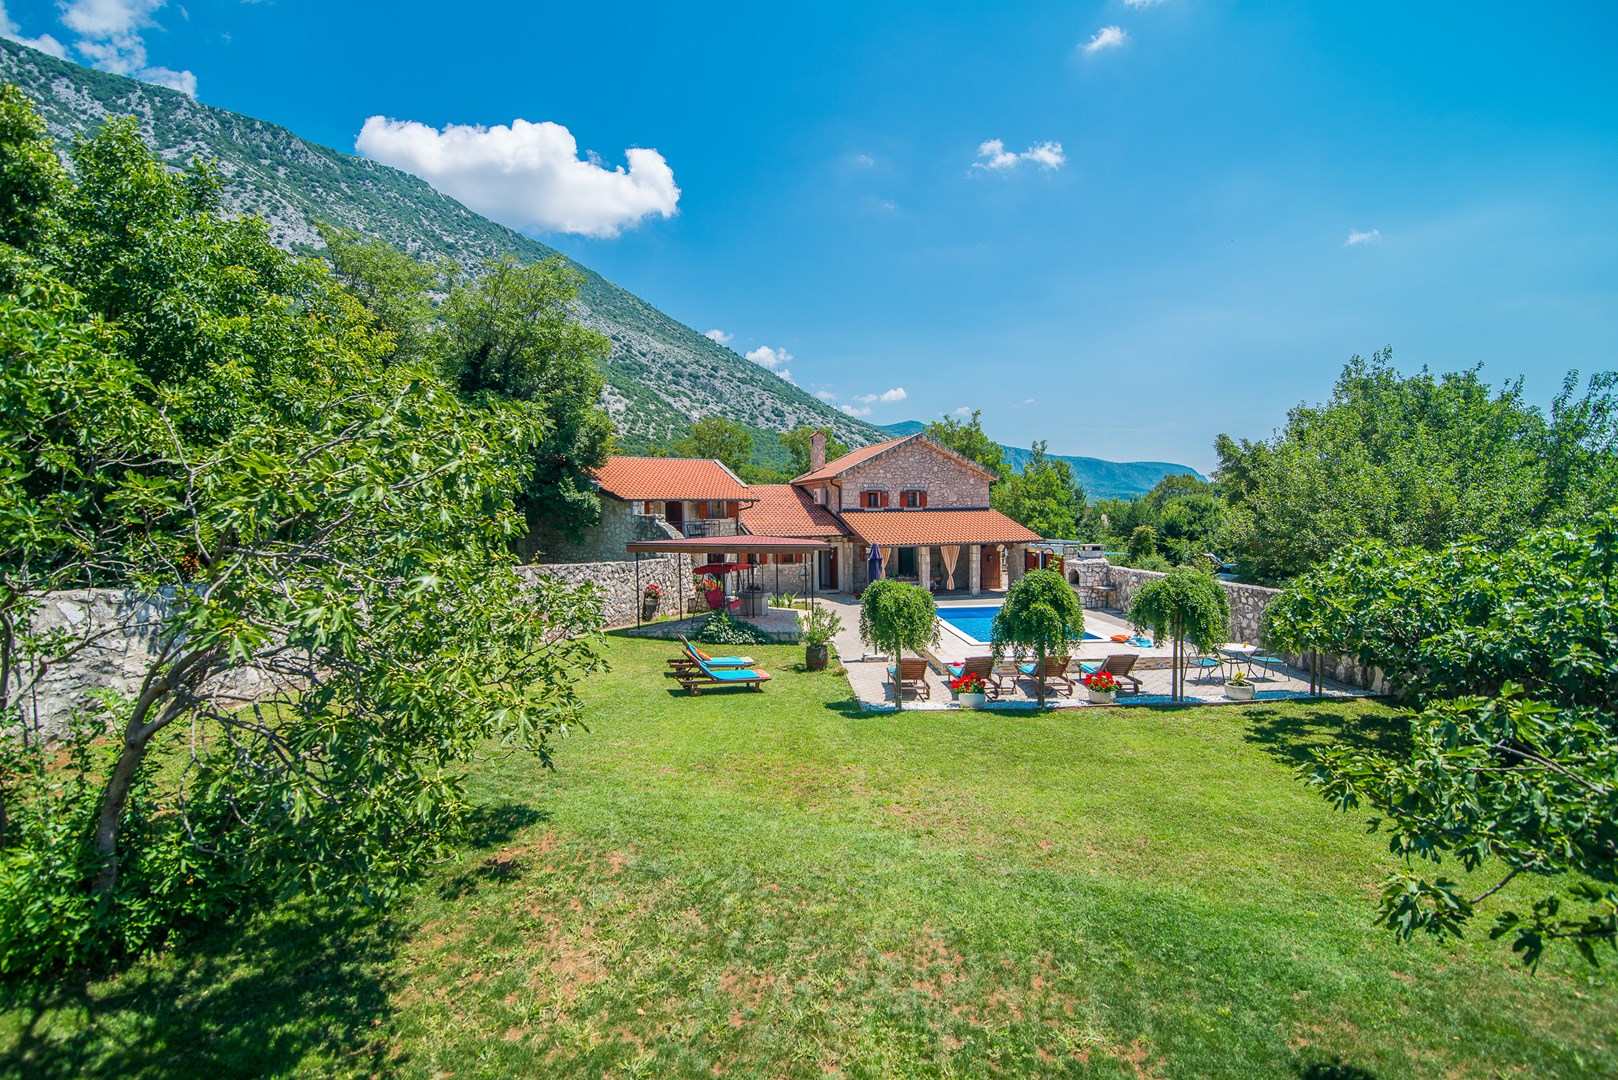 Ferienhaus Prelec mit eigenem Pool  in Kroatien